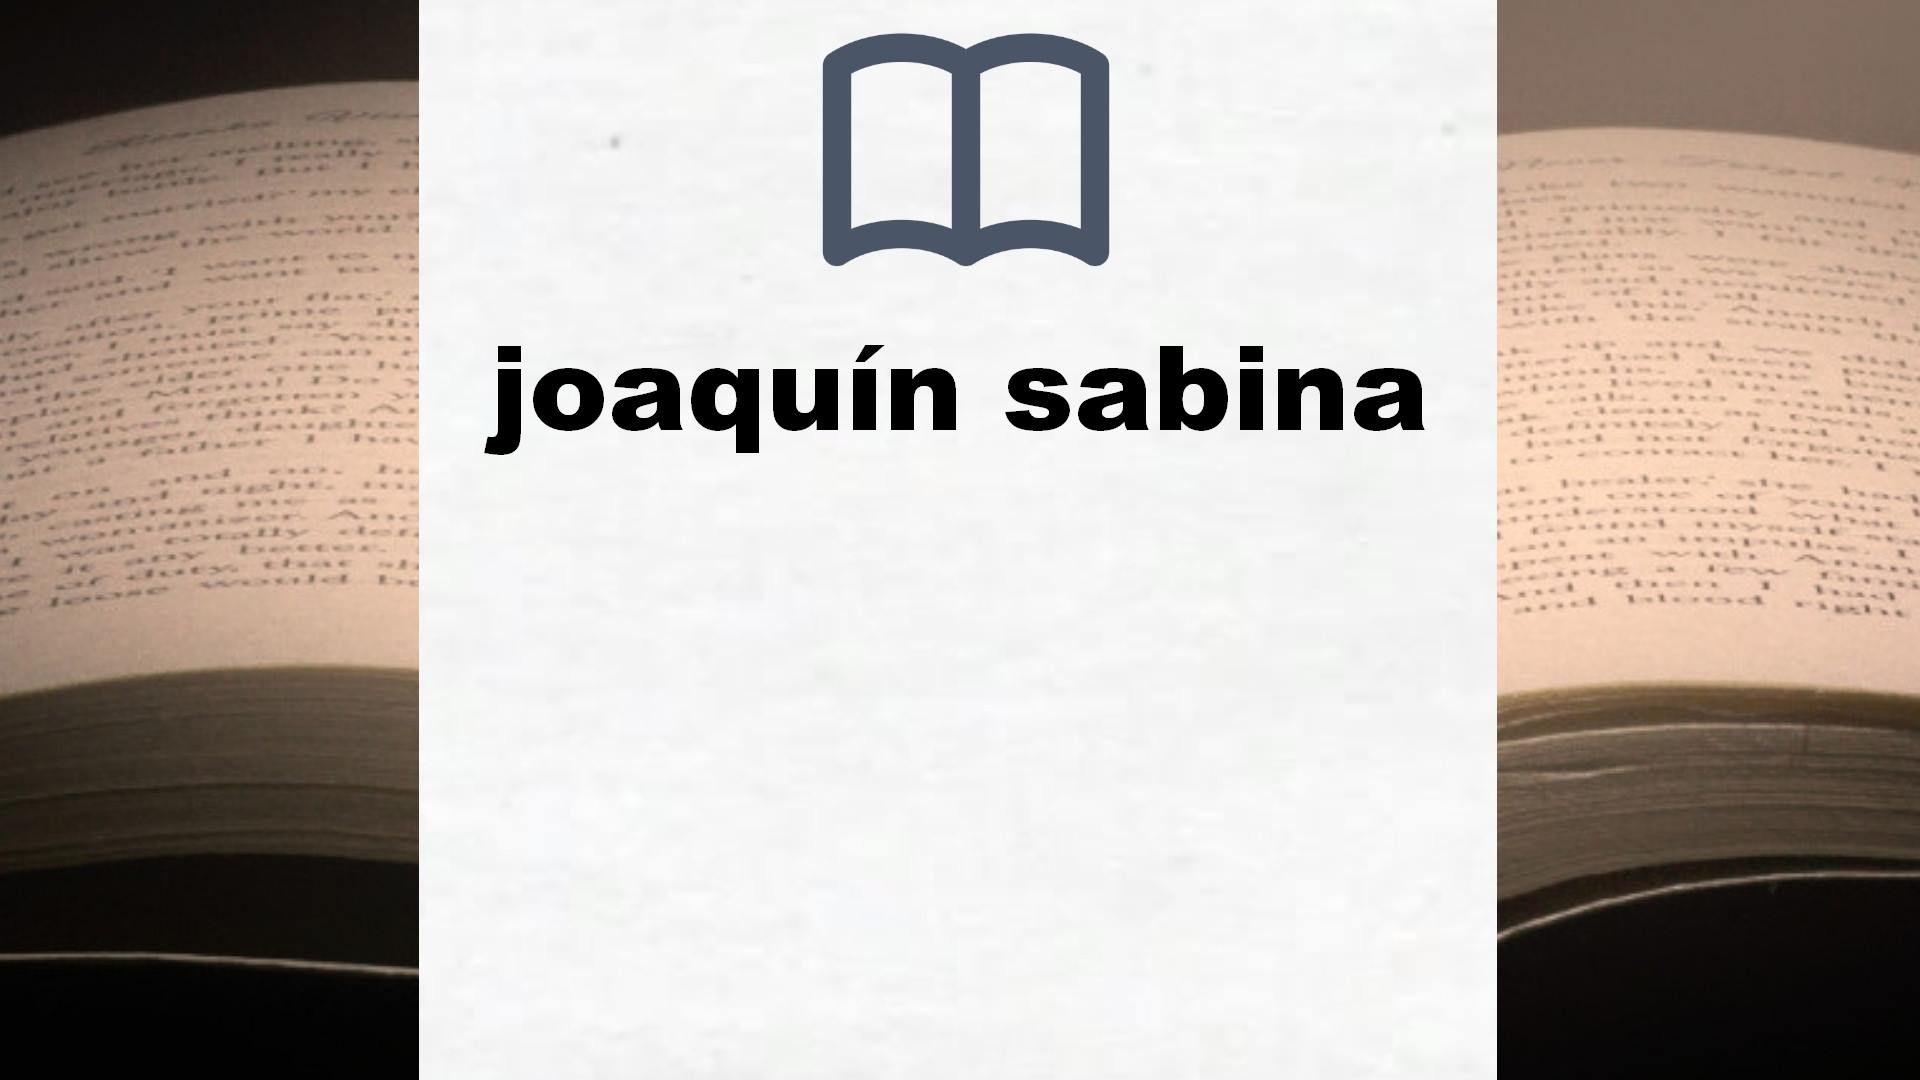 Libros sobre joaquín sabina